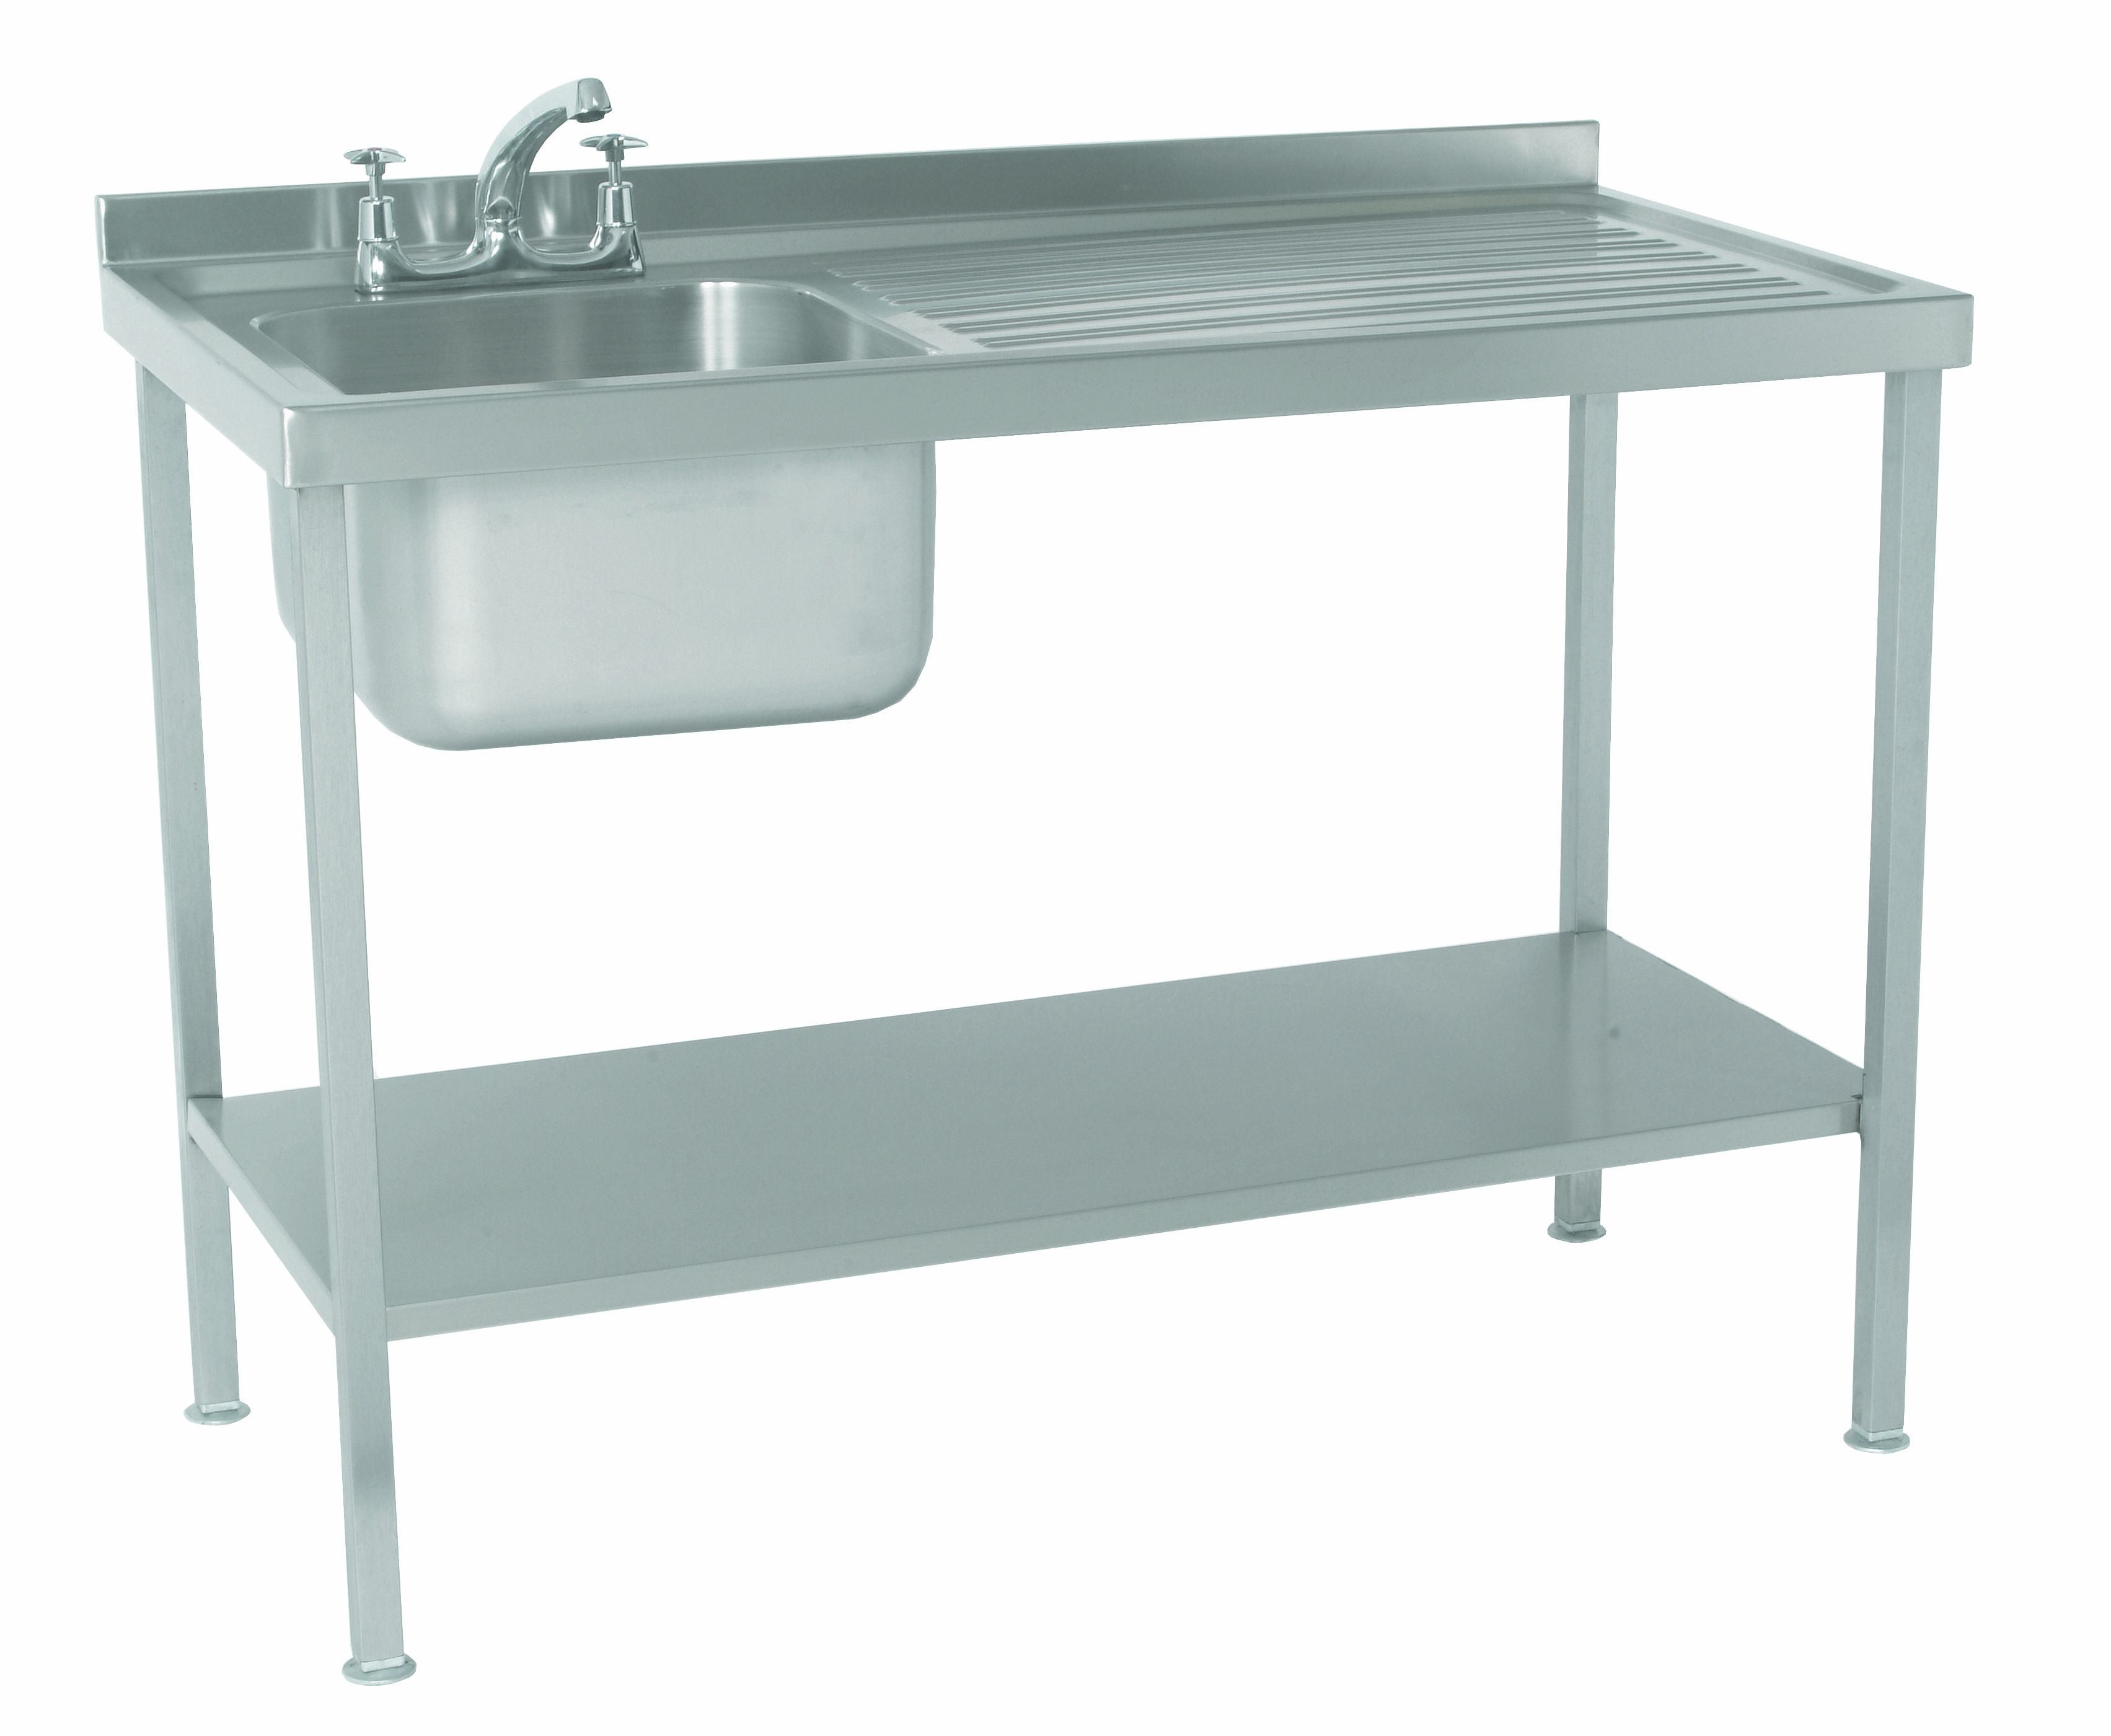 Parry Sink Unit Single Bowl RH Drainer SINK1060R